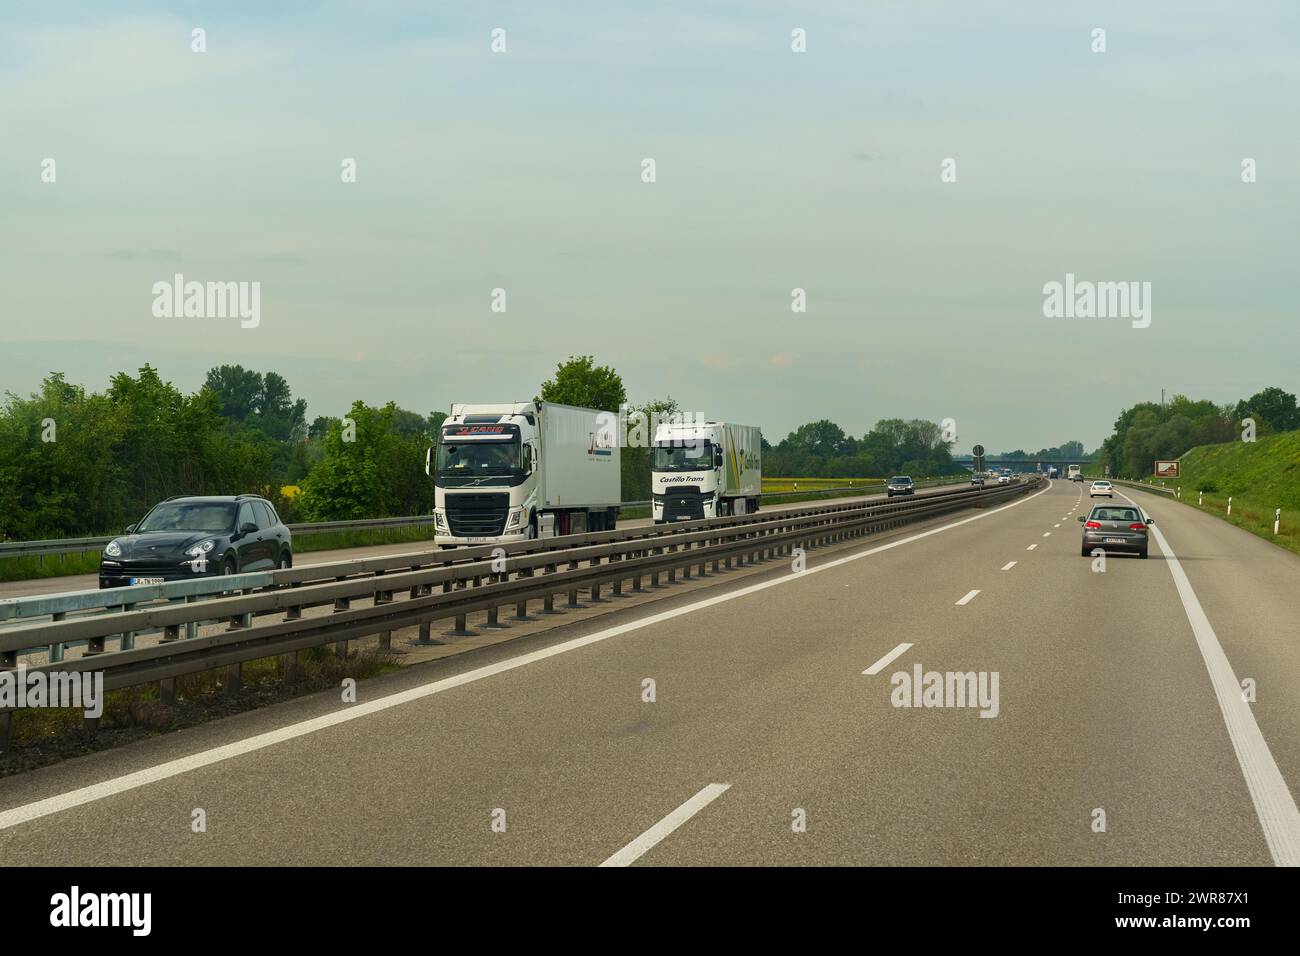 Lyon, France - 7 mai 2023 : une paire de camions se déplaçant sur une autoroute, entourée d'autres véhicules. La route s'étend au loin sous un ciel dégagé Banque D'Images